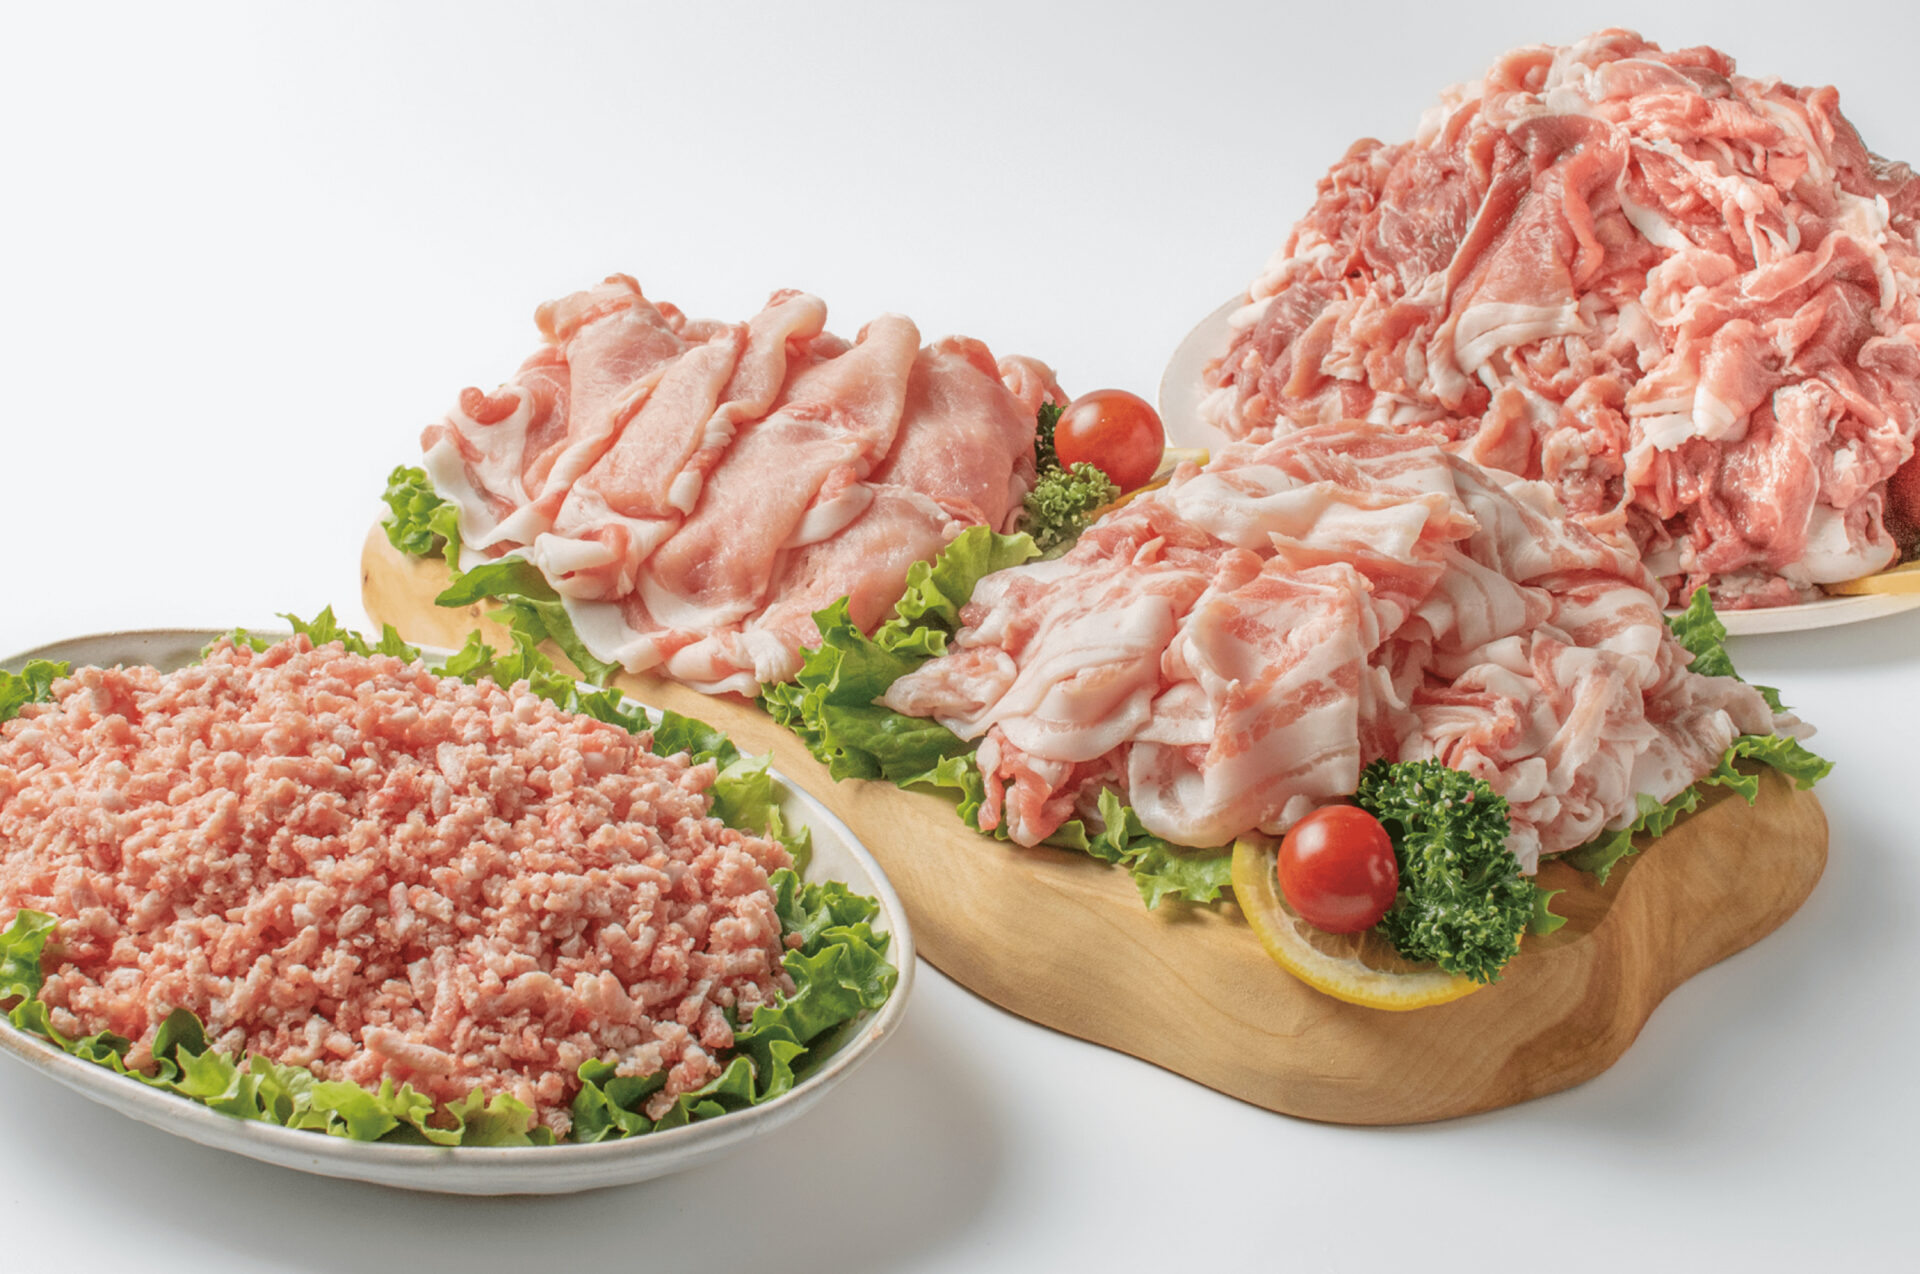 「前田さん家のスウィートポーク」
肉肉肉4kgセット